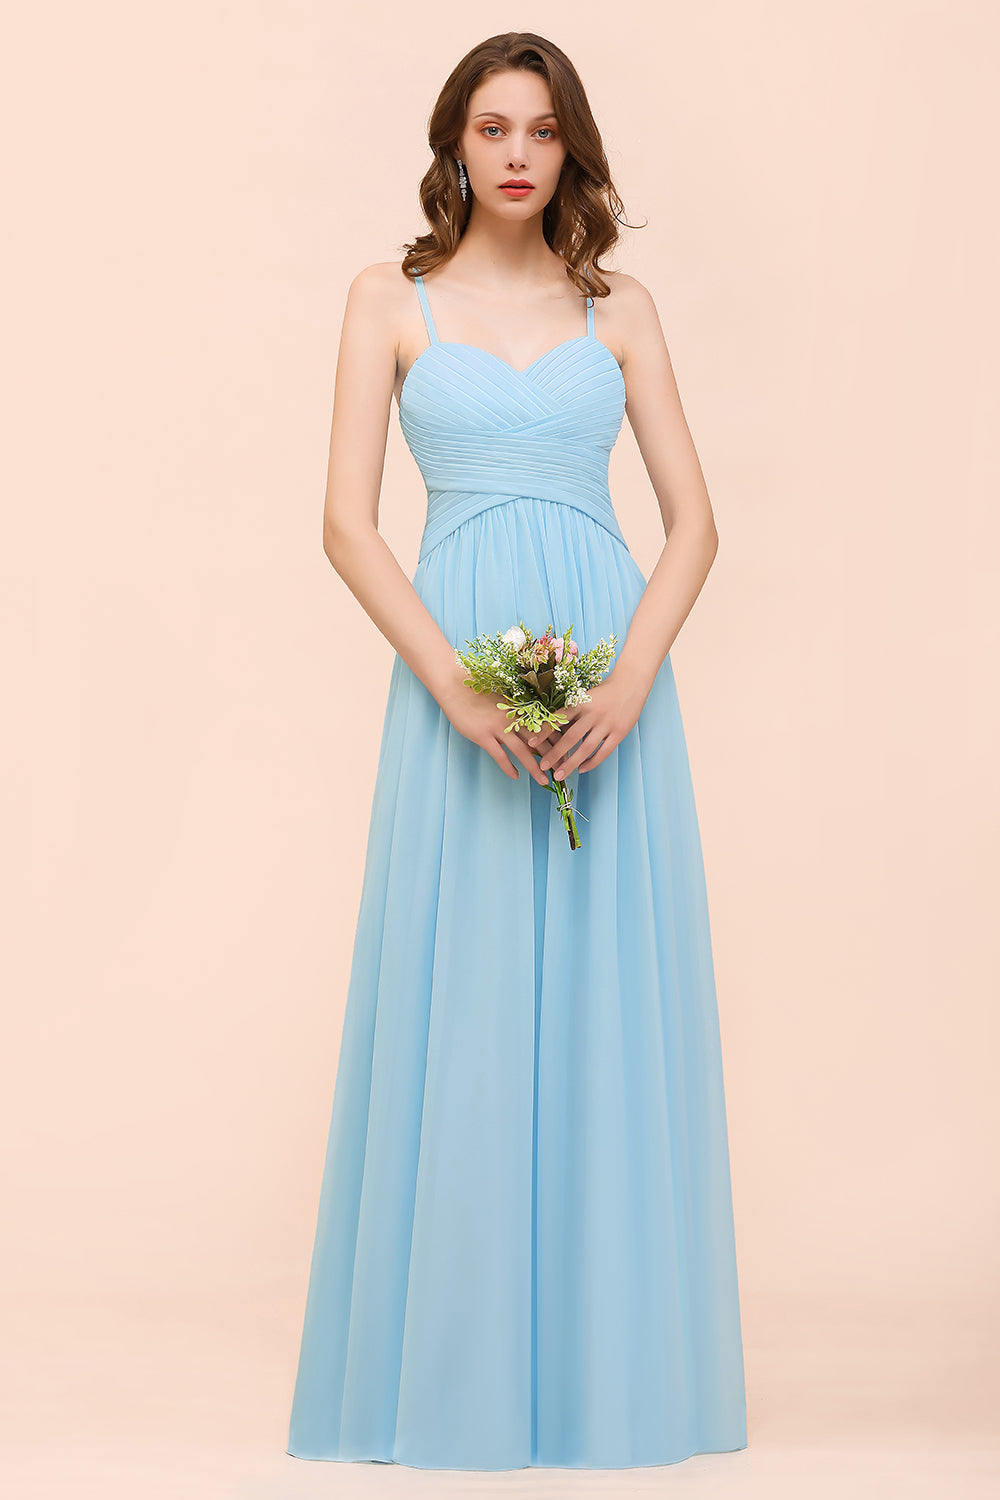 Suchen Sie Heller Blau Brautjungfernkleider Günstig online bei babyonlinedress.de. Langes Brautjungfernkleid Online für Sie zur Hochzeit gehen.